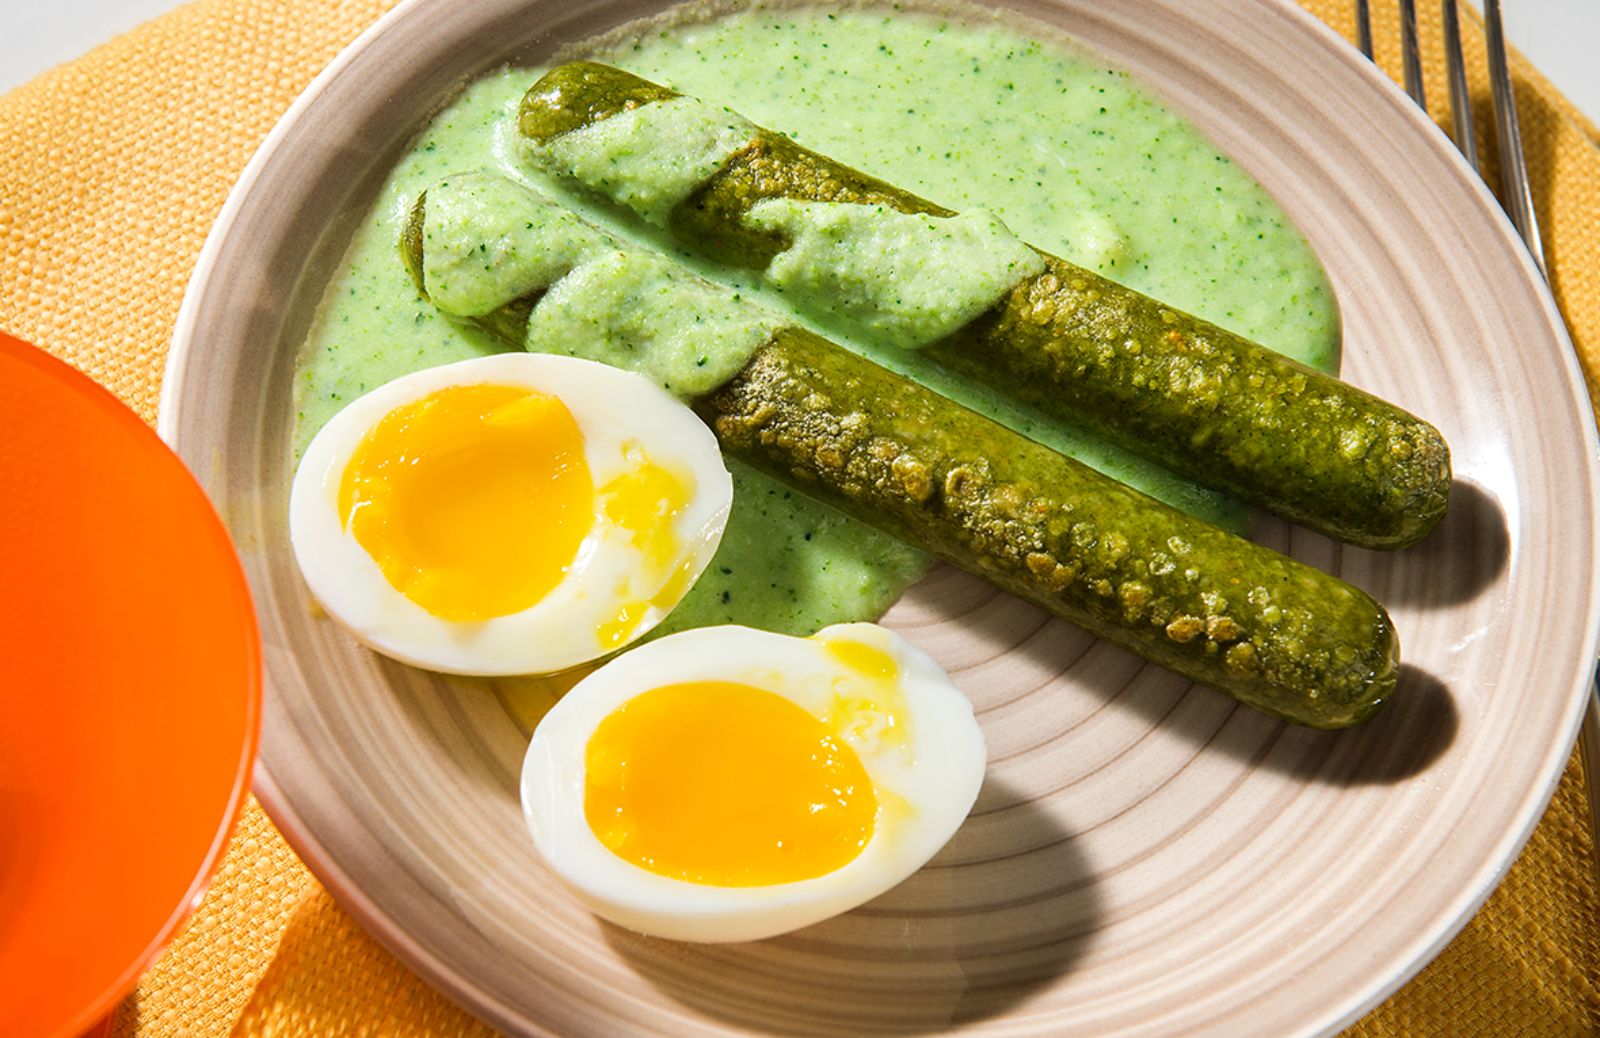 Cucina green: würstel di verdure in salsa di broccoli e uovo alla coque